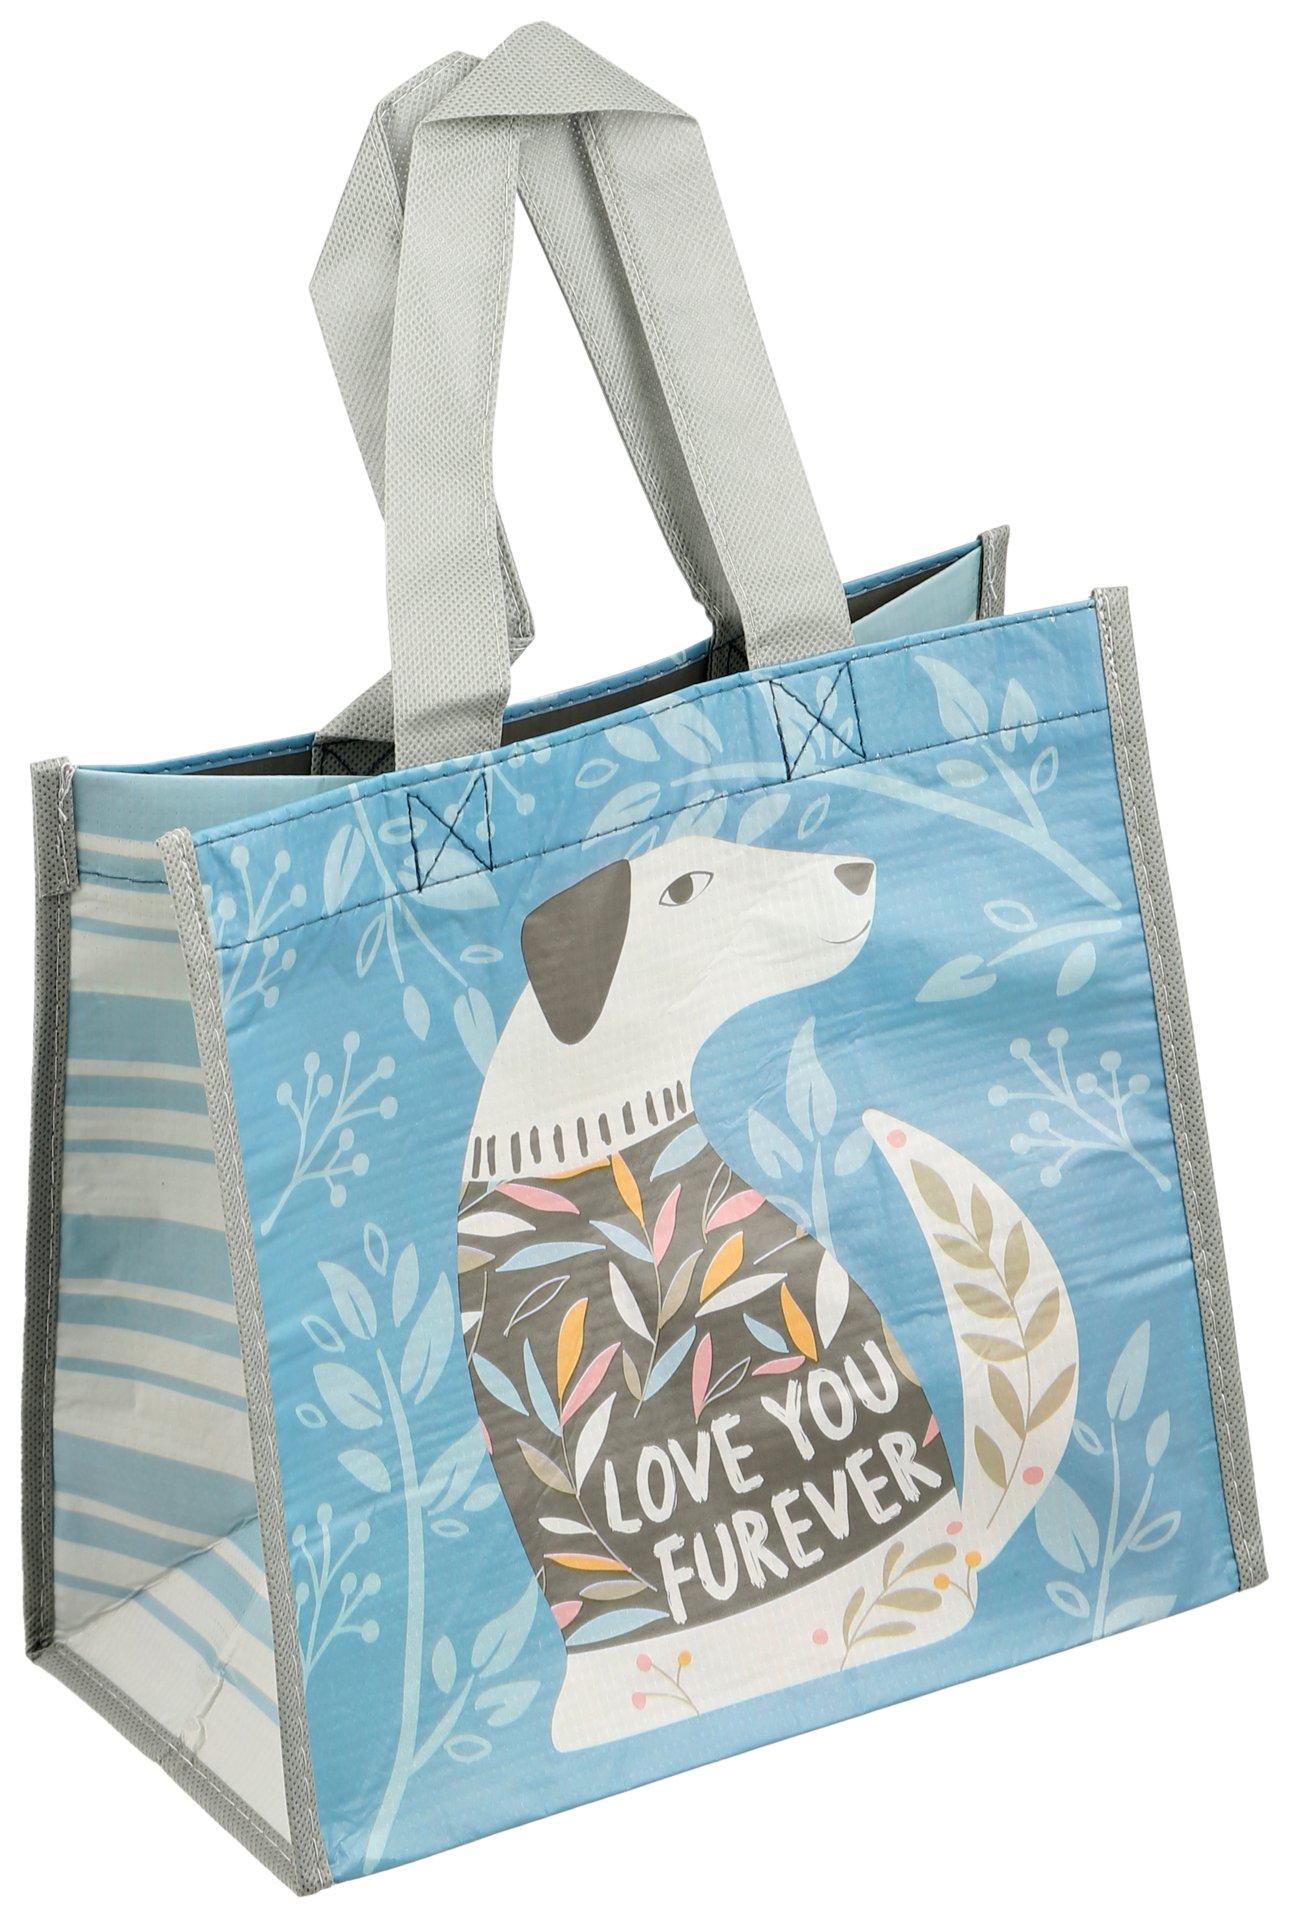 Karma Love You Forever Dog Print Reusable Gift Tote Bag